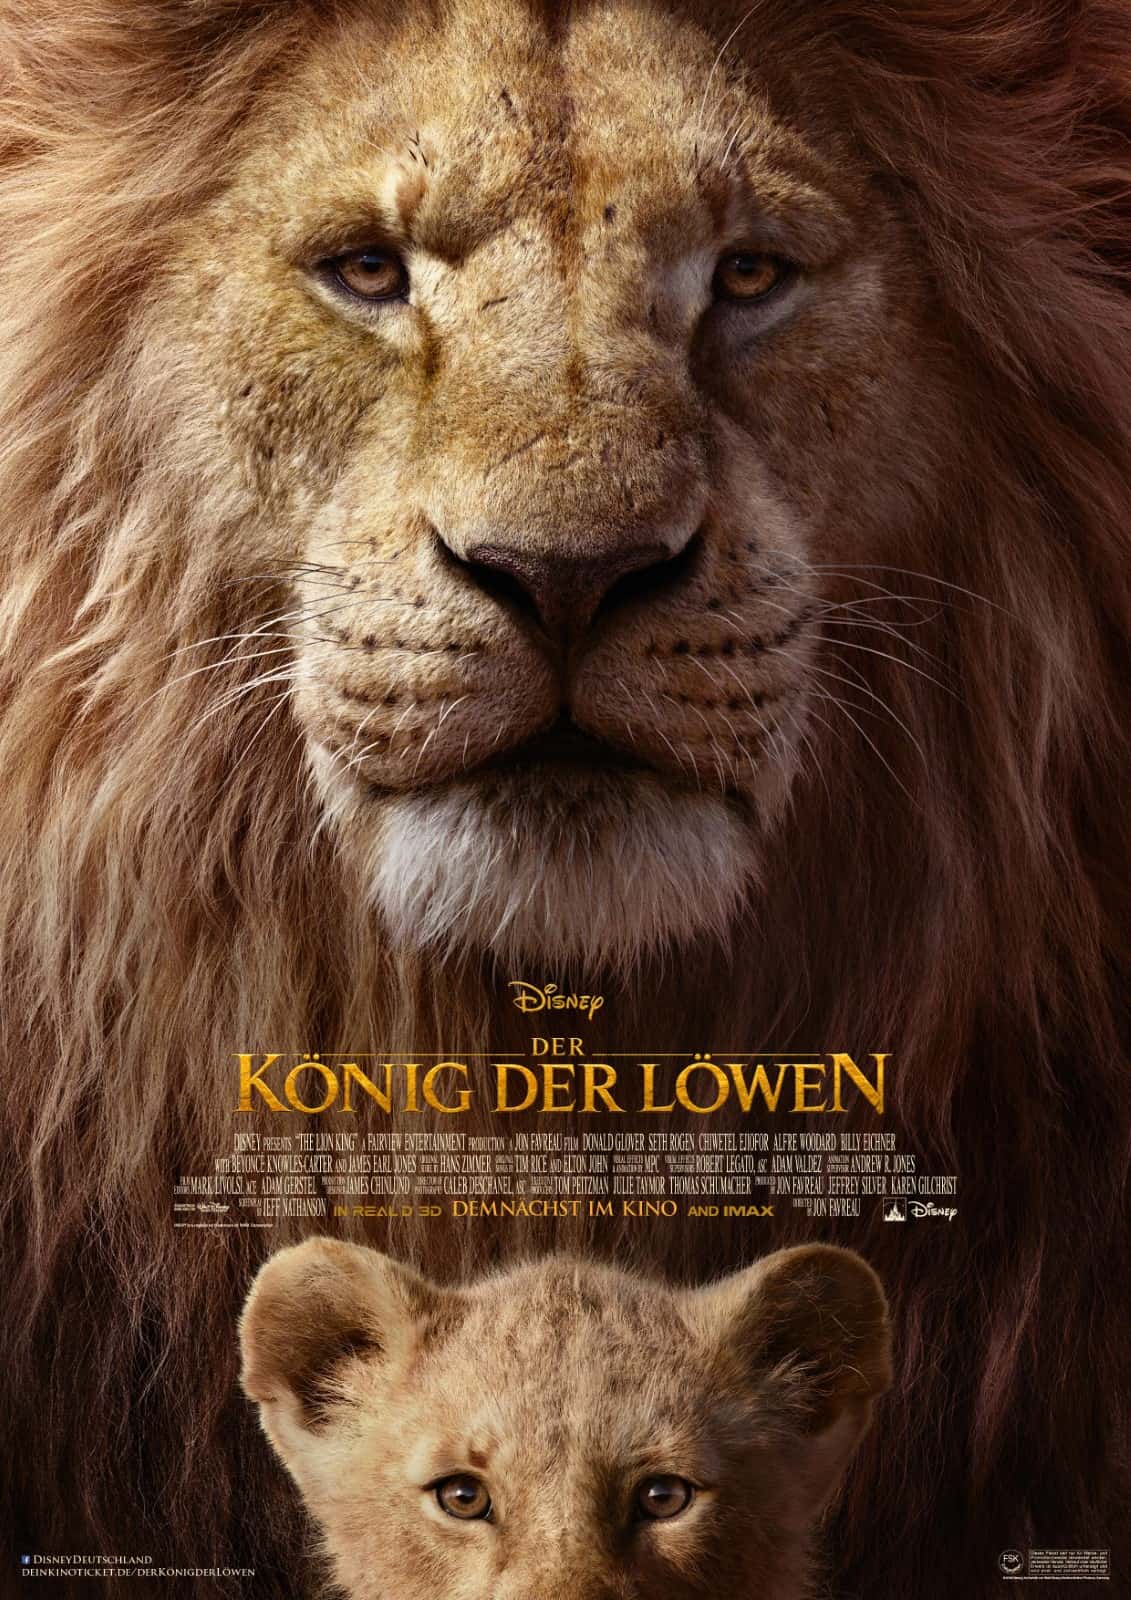 König der Löwen 2 kommt Obwohl die Handlung noch nicht bekannt ist - es ist noch nicht bekannt, ob sie durch die direkte Videofortsetzung beeinflusst wird - deutet der Deadline-Bericht an, dass sie der Story aus 